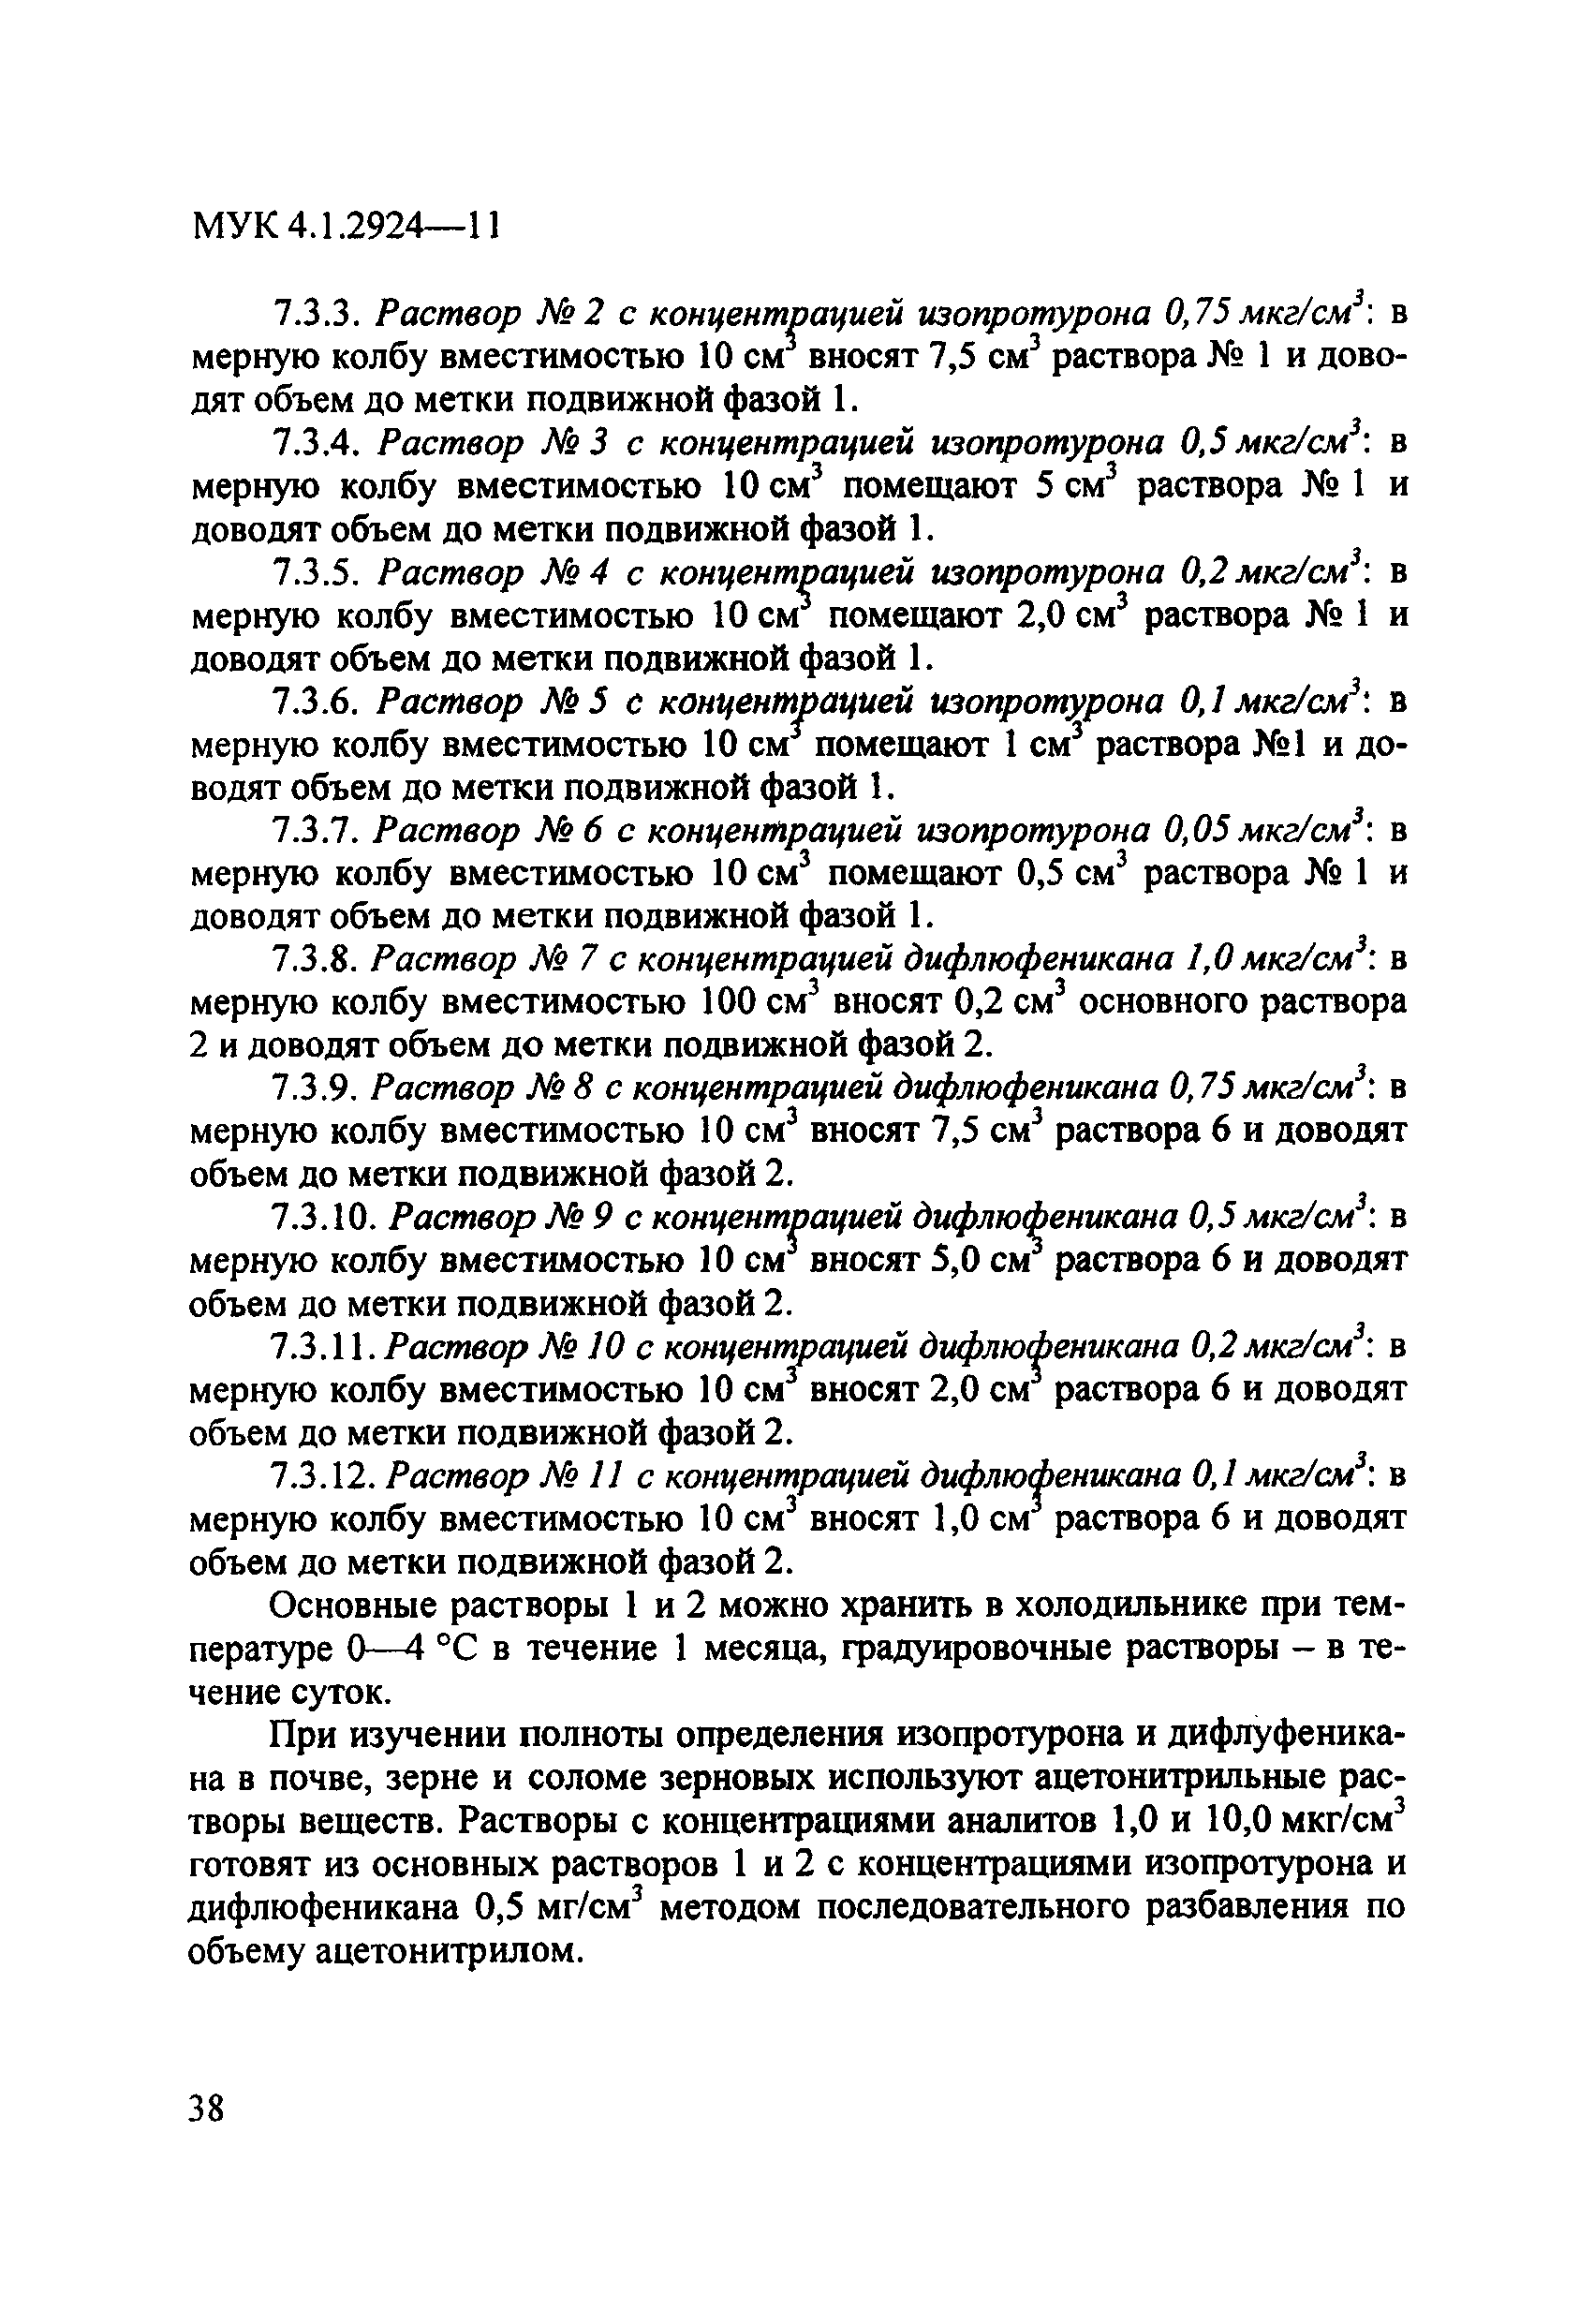 МУК 4.1.2924-11